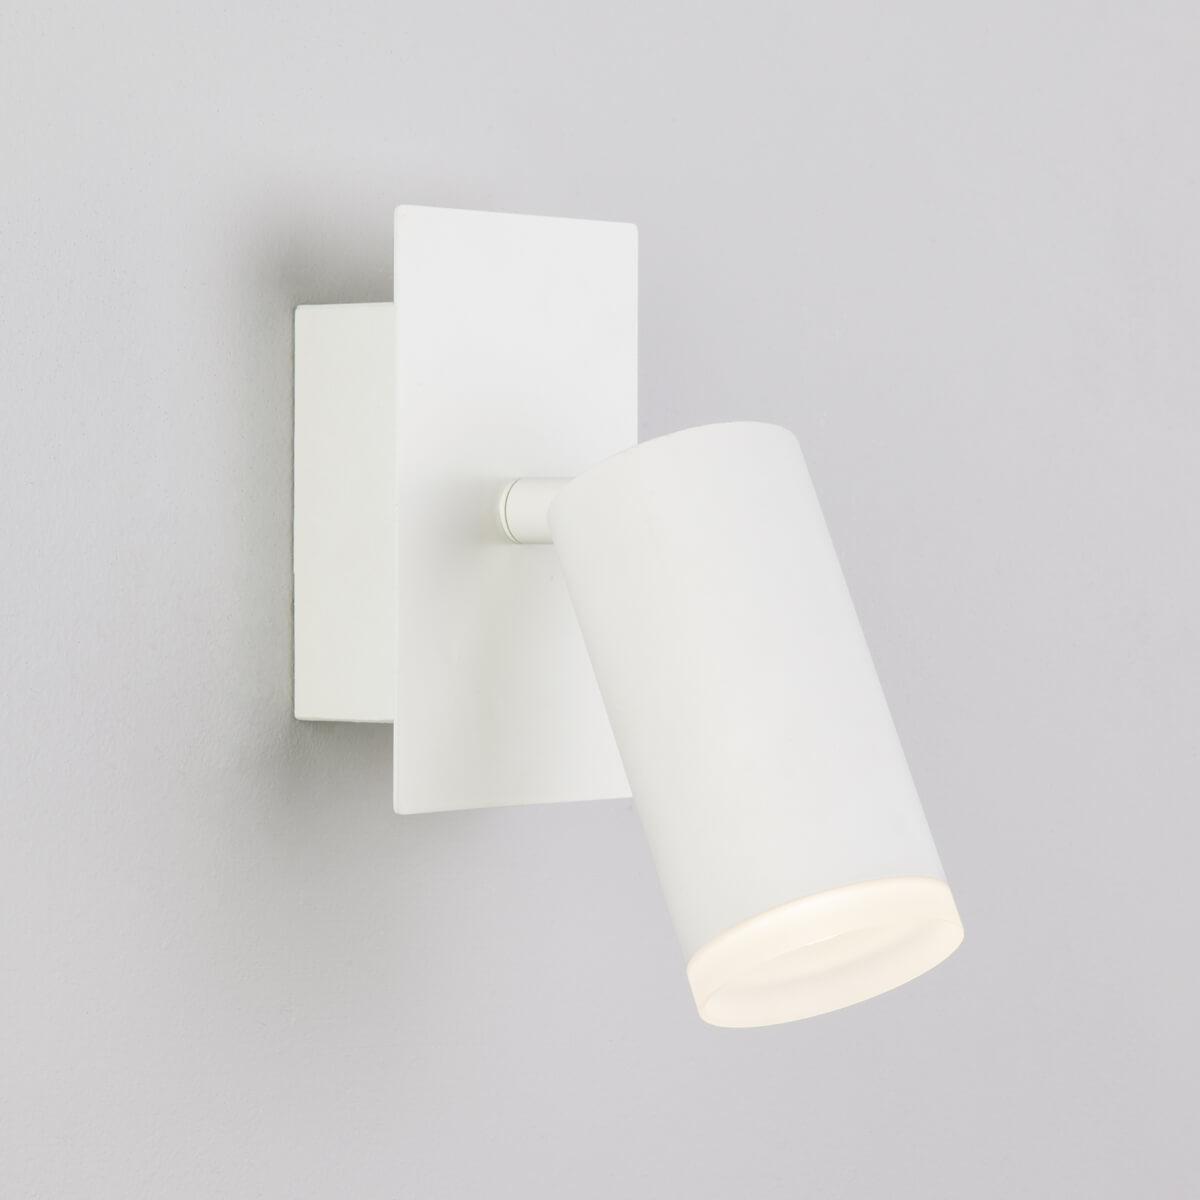 Настенный светодиодный светильник Eurosvet 20067/1 LED белый настенный фен viatto va hdw1200 164620 белый